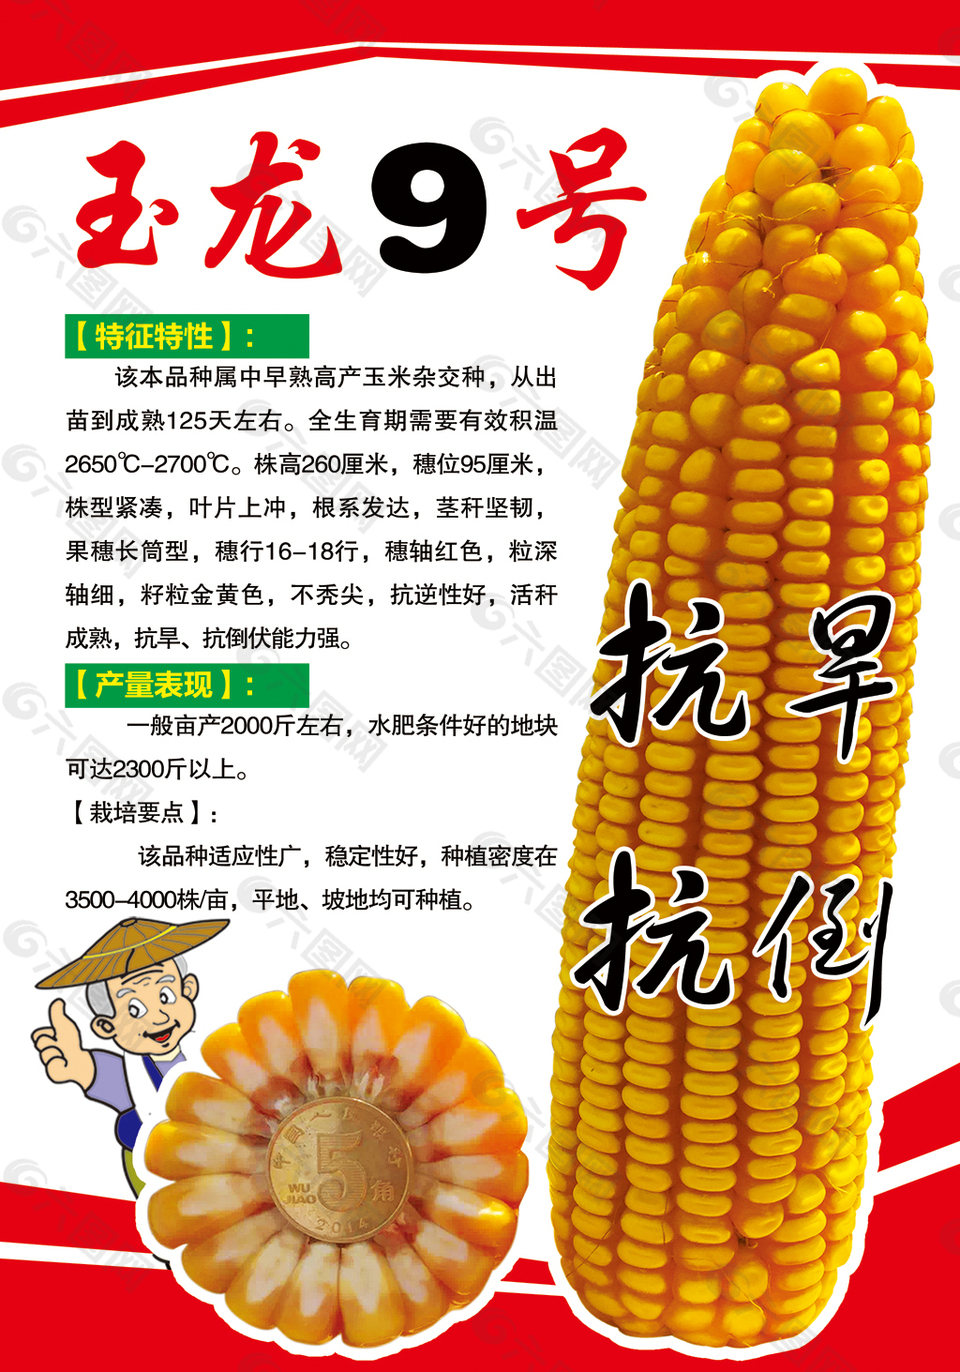 玉米种子玉龙9号平面广告素材免费下载(图片编号:7891079)